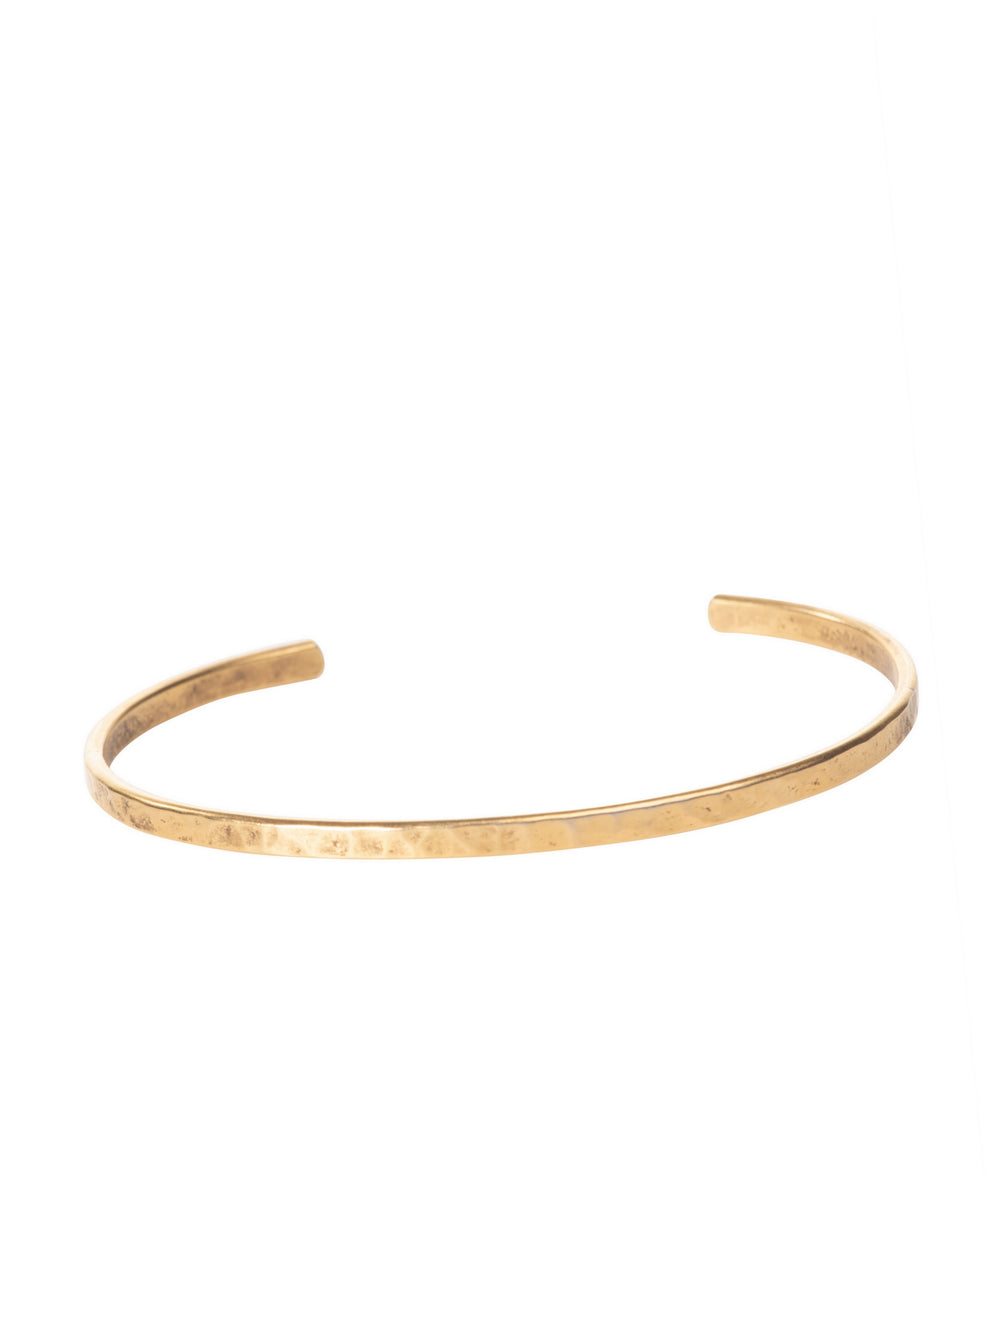 Gold Hammered Bracelet